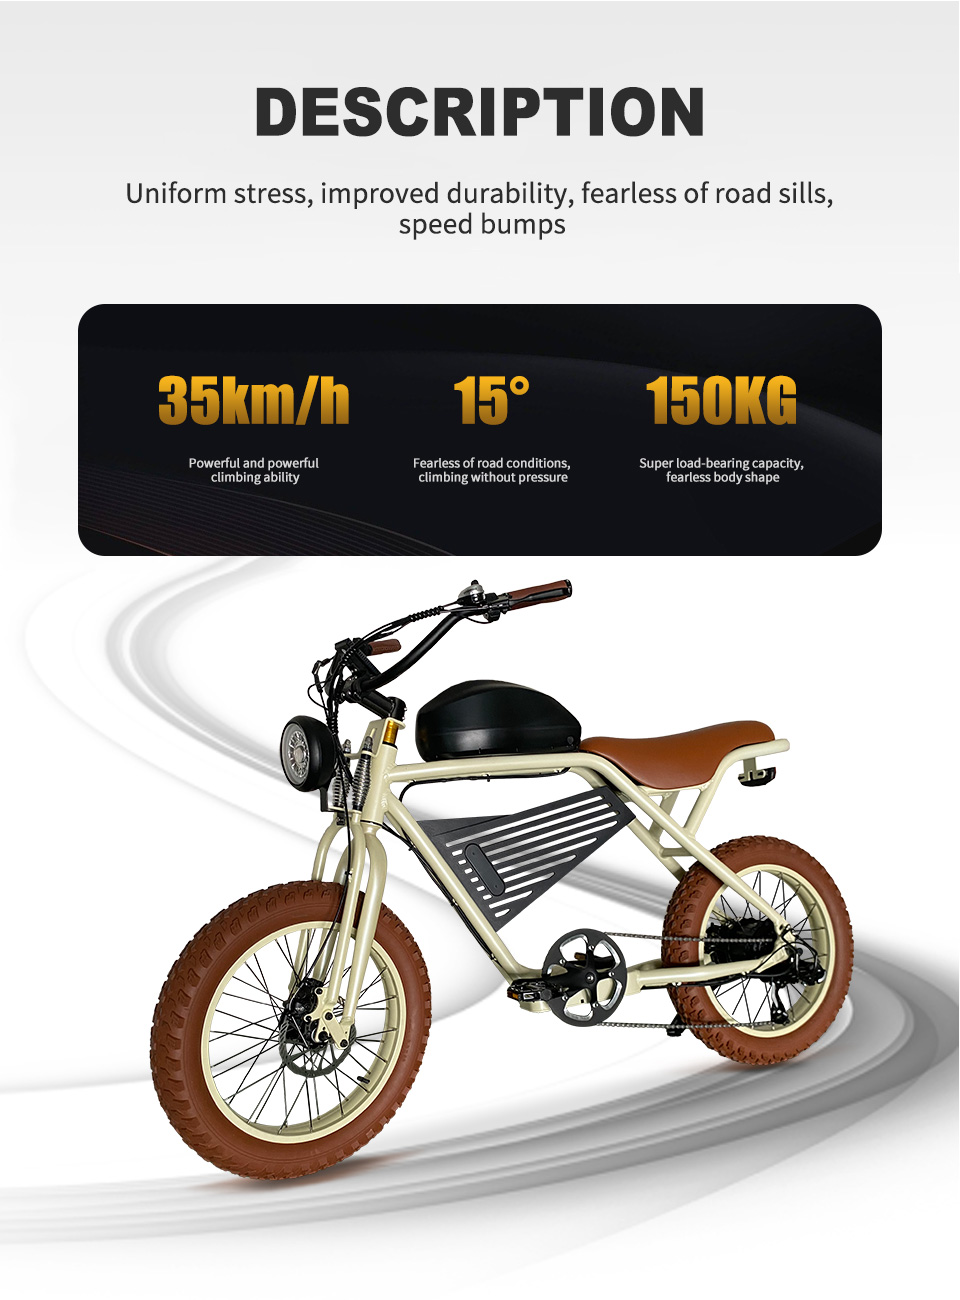 2211 350W-1000W 48V 16Ah19.2Ah 35kmh Lithium Battery Electric Bike Detalye05